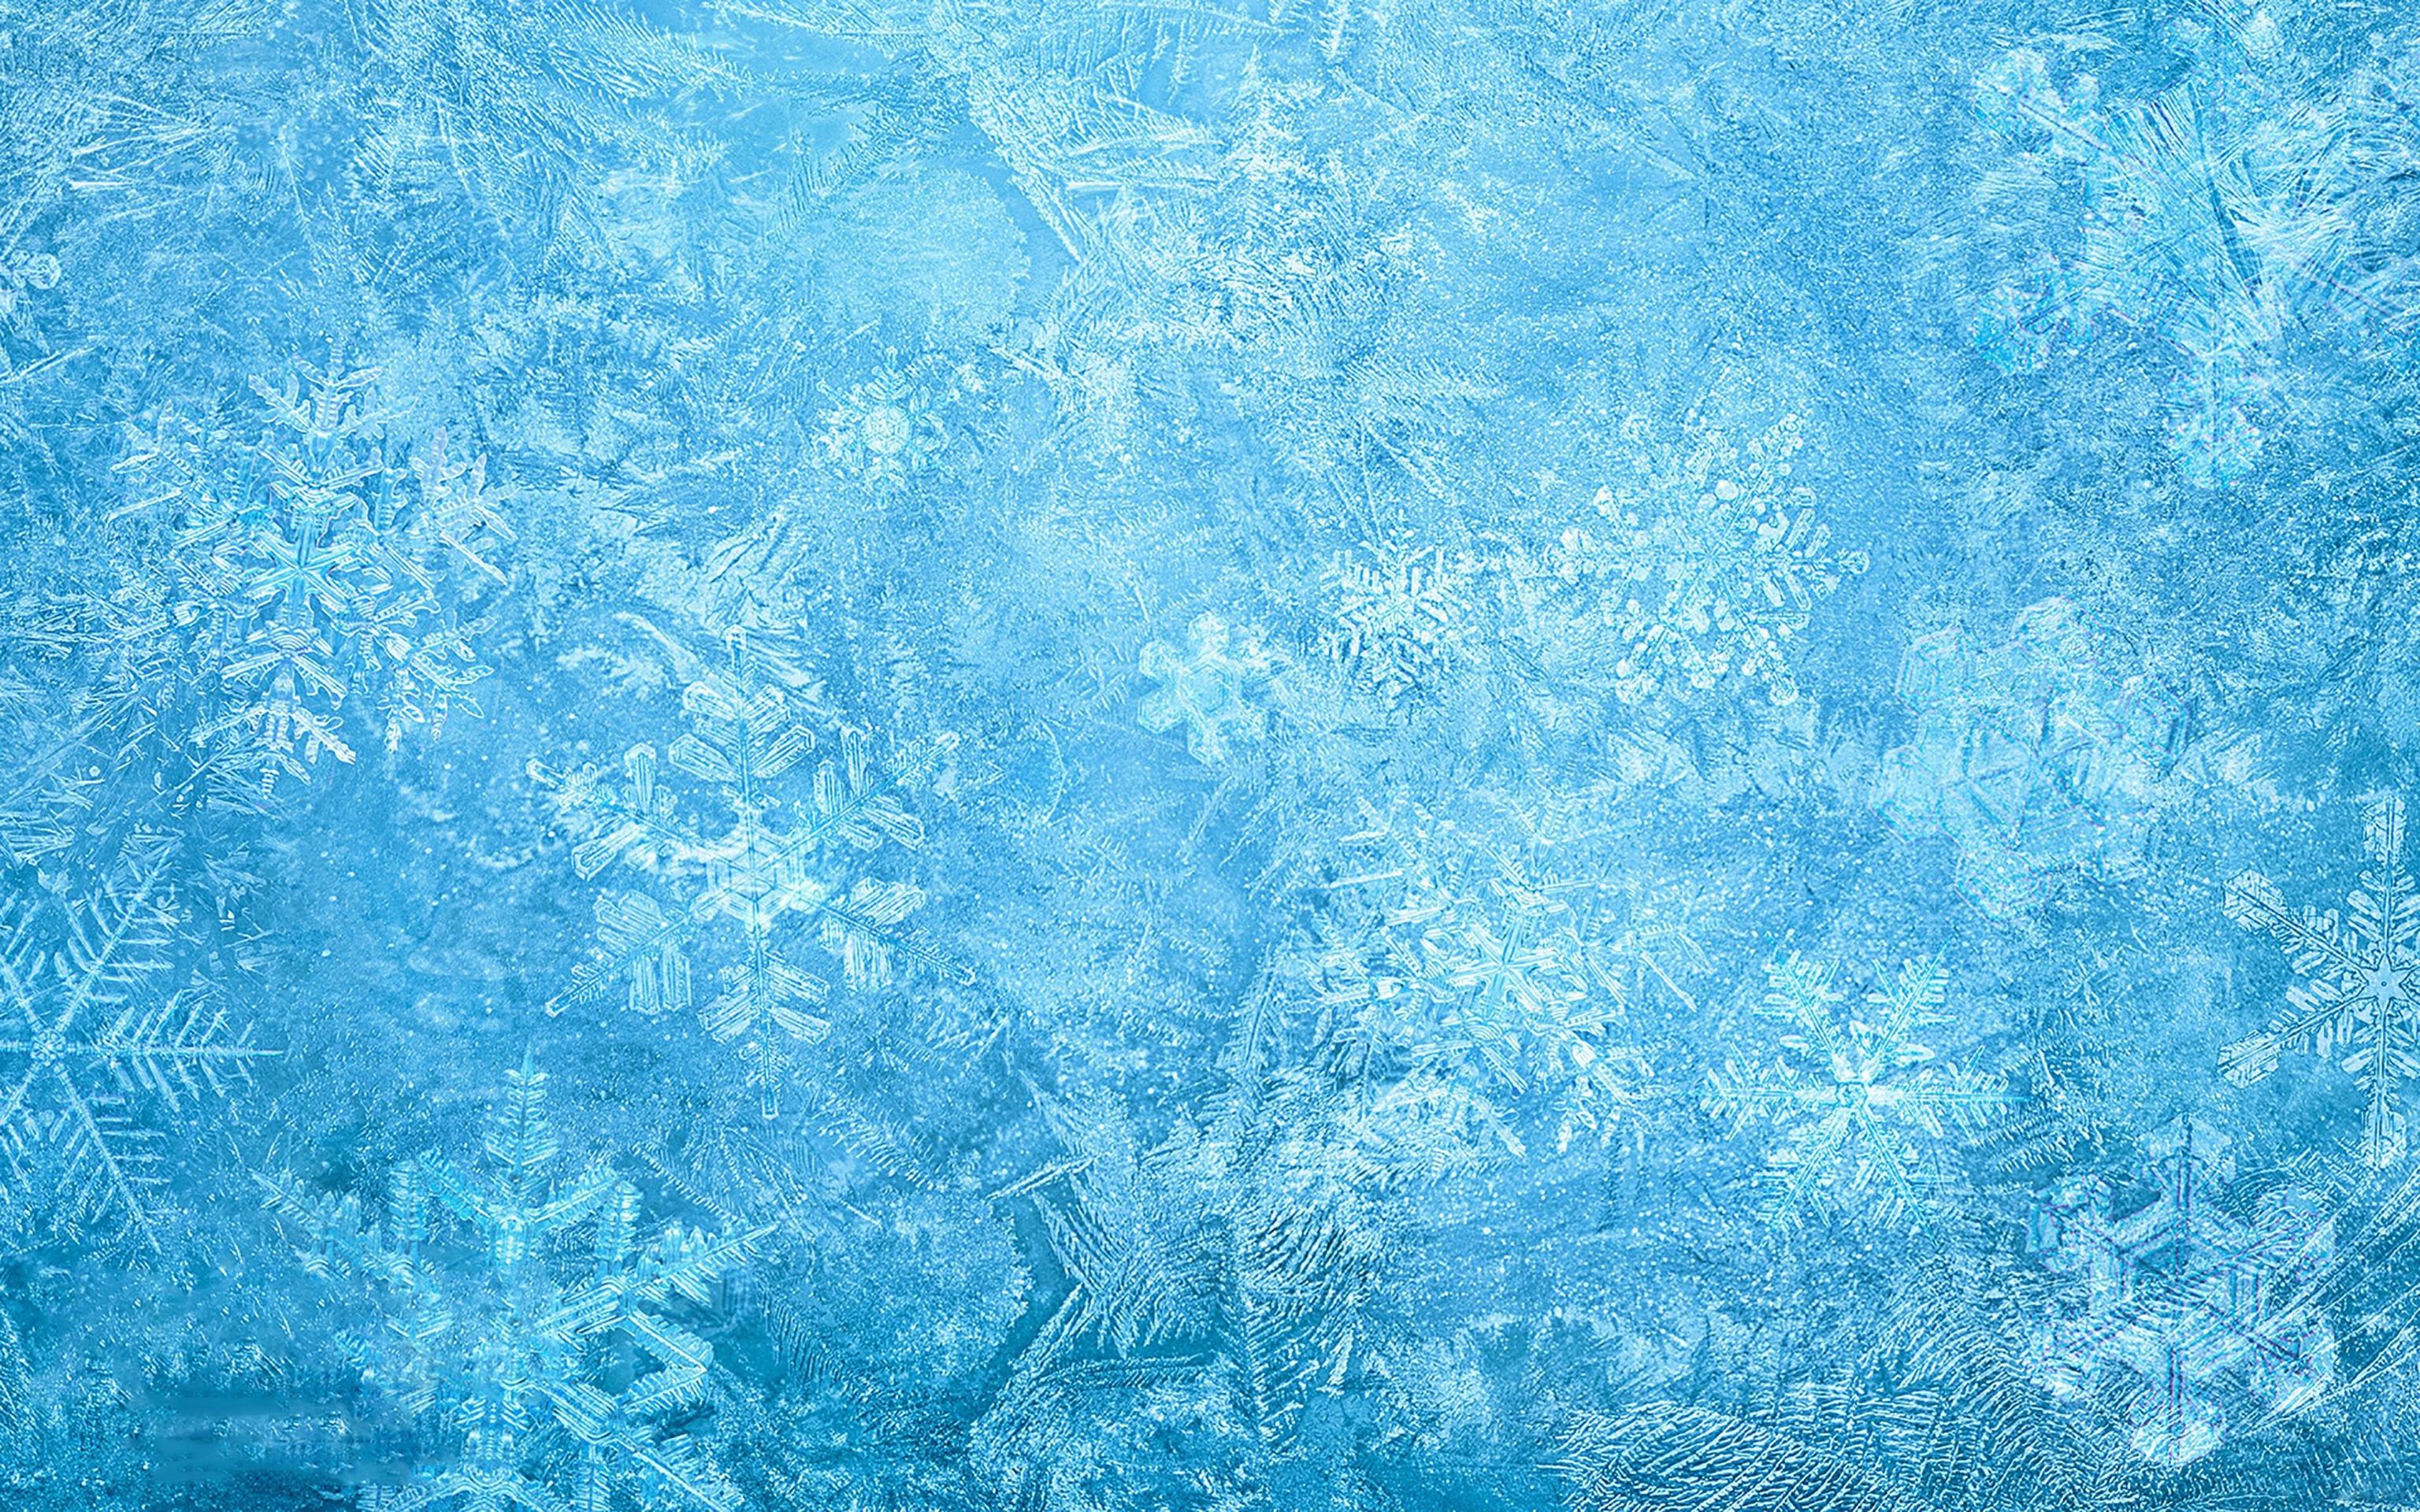 Frozen Wallpapers